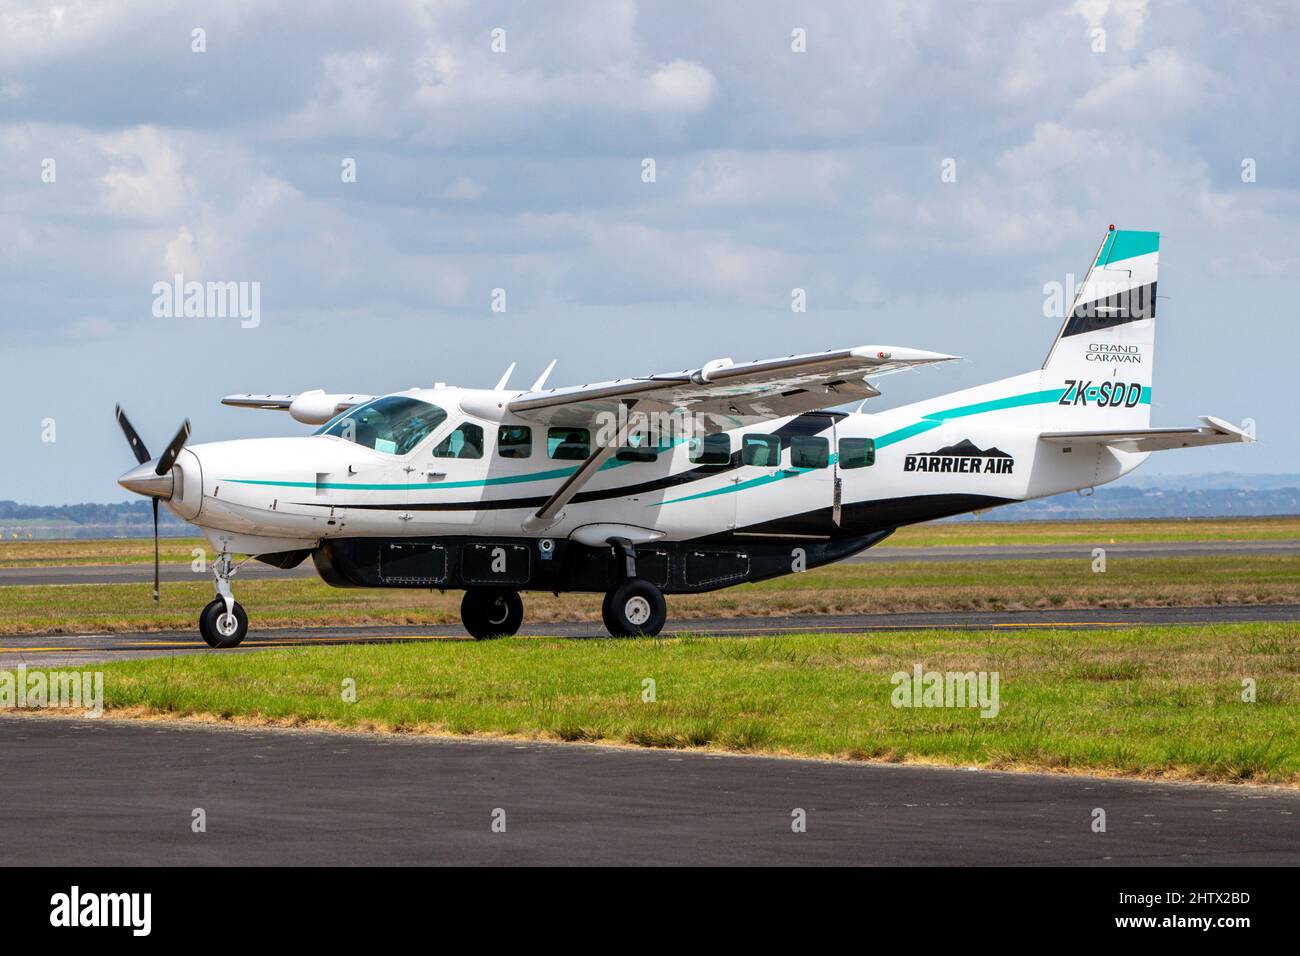 Barrier Air Cessna am Montag, den 28. Februar 2022, auf der Start- und Landebahn des Flughafens Auckland, Neuseeland. Stockfoto